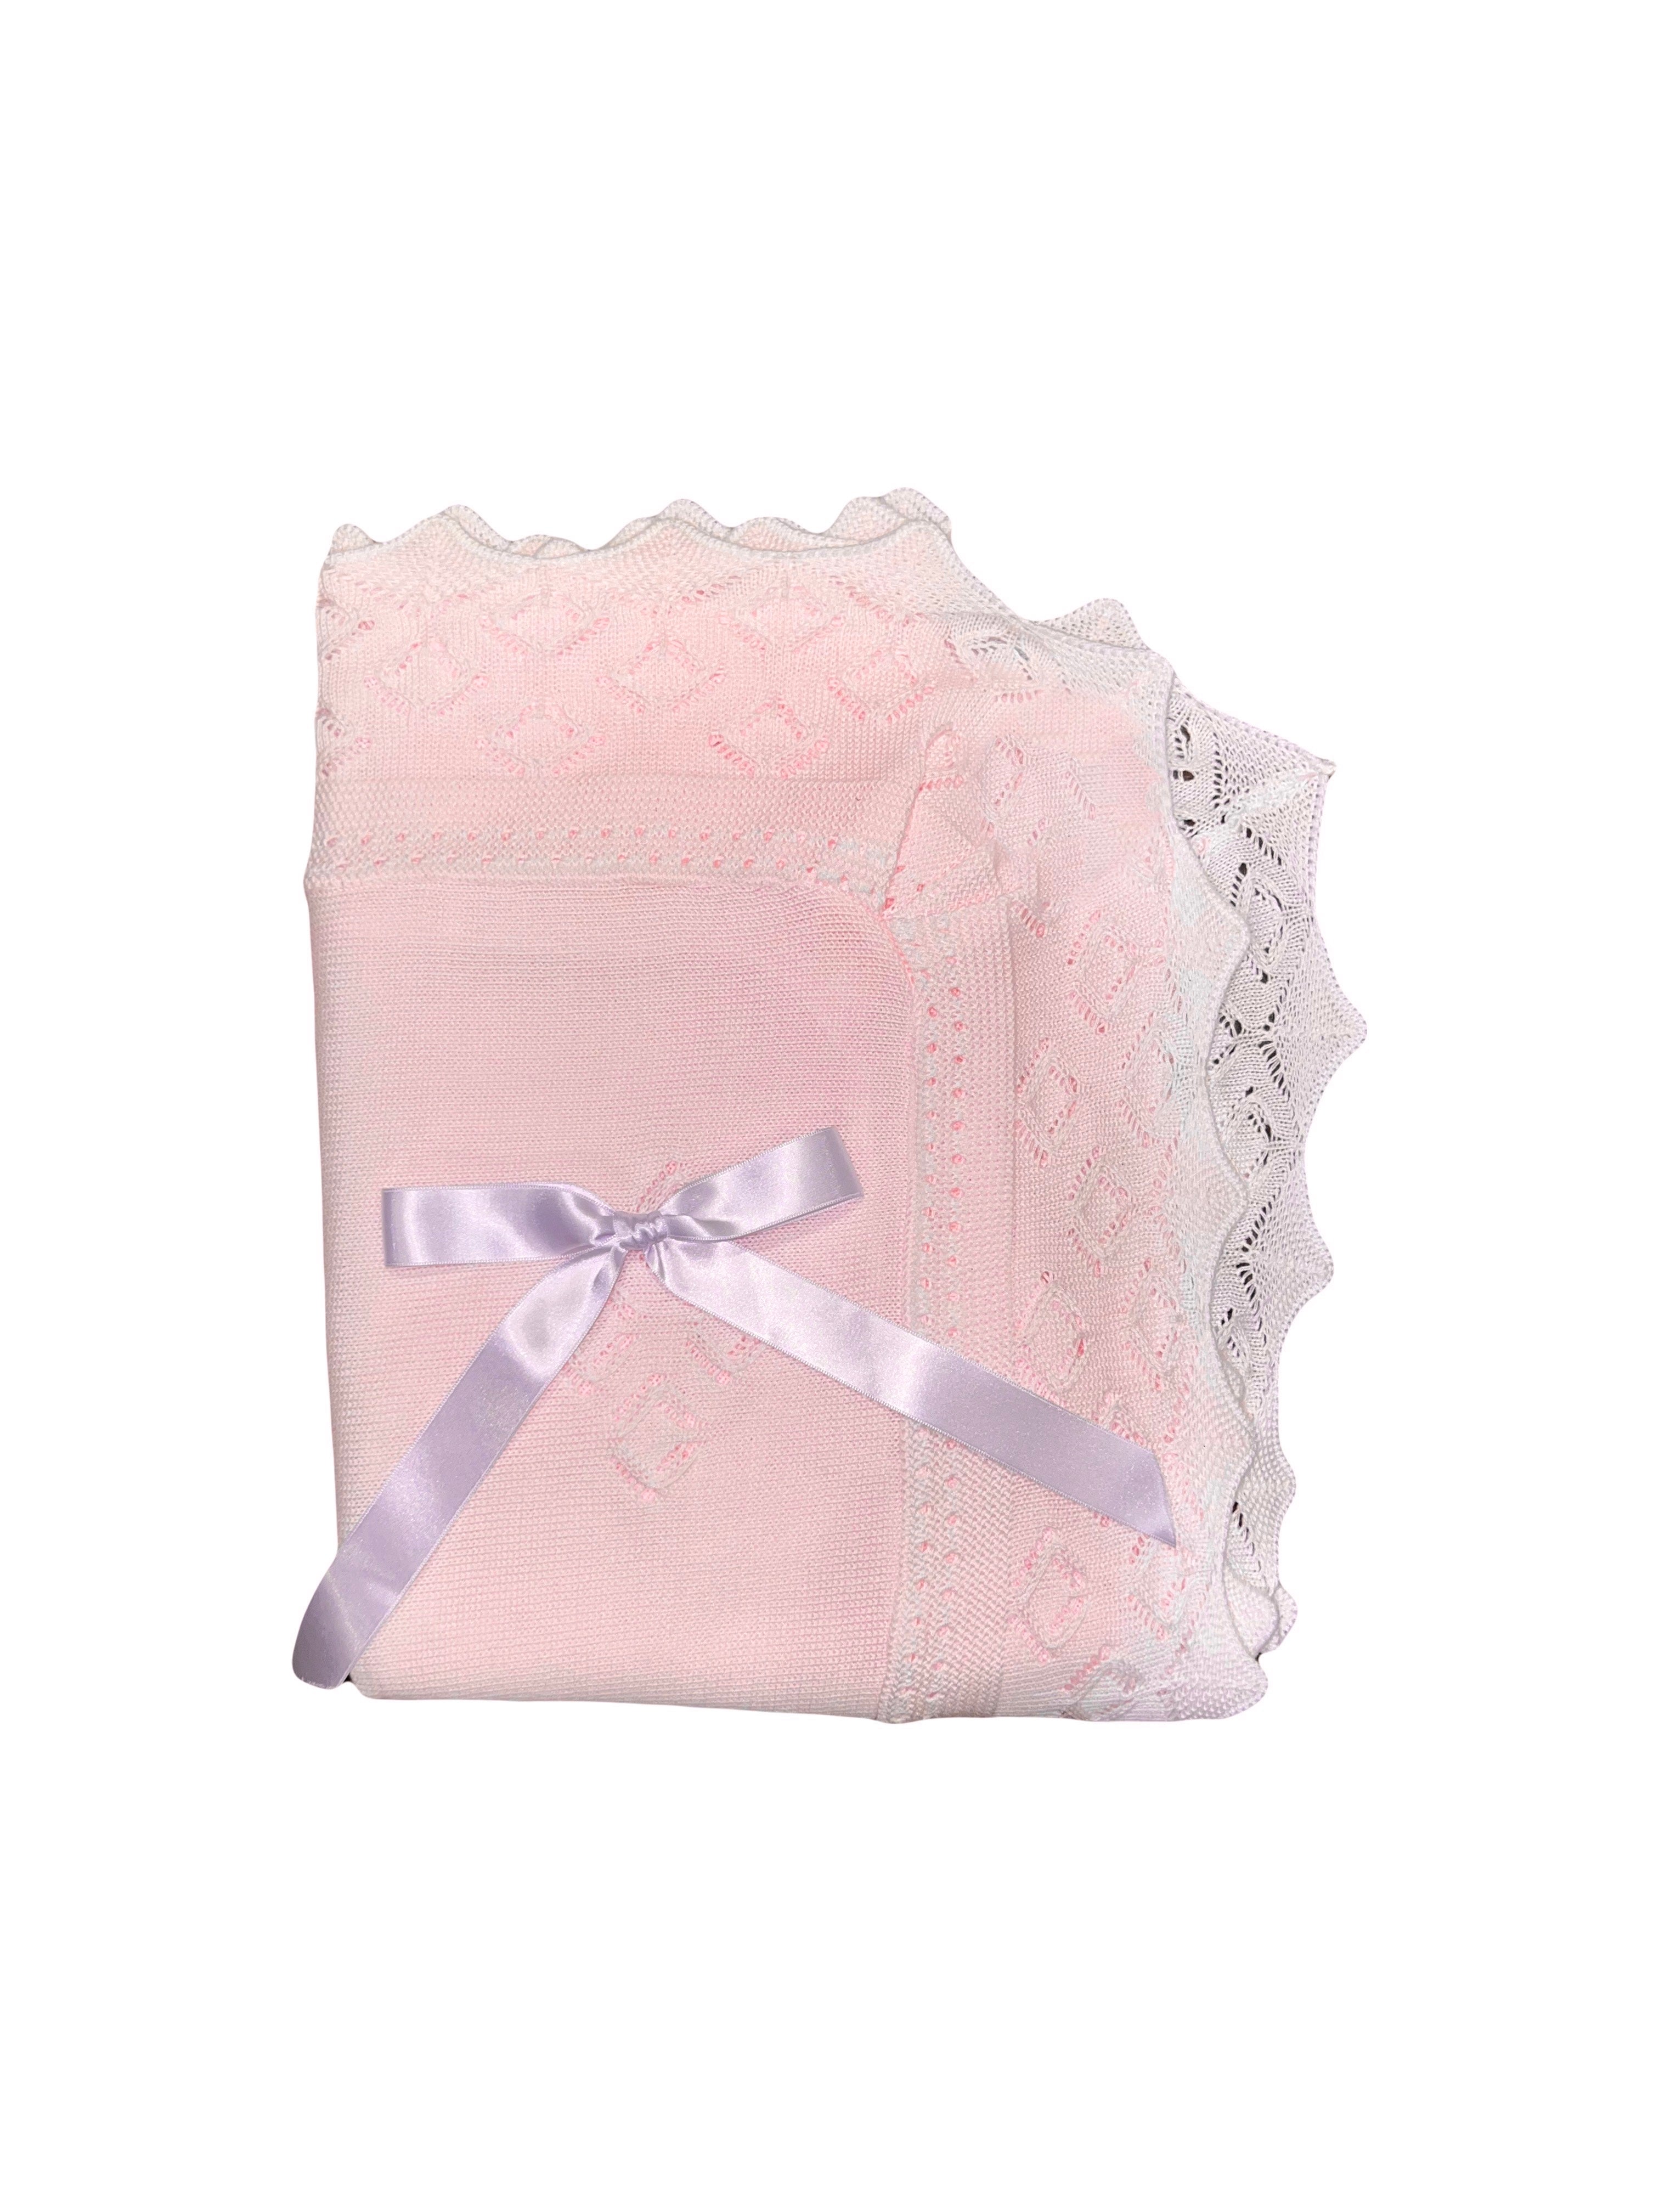 Light Pink/White Knit Blanket